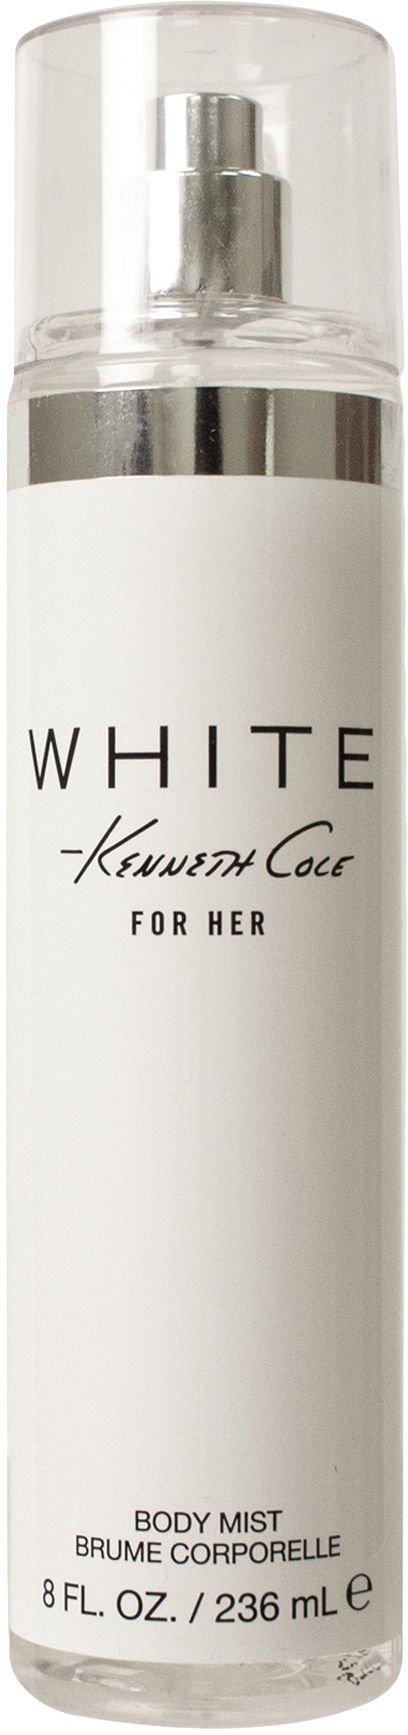 Kenneth Cole White Womens 8 fl. oz. Body Mist